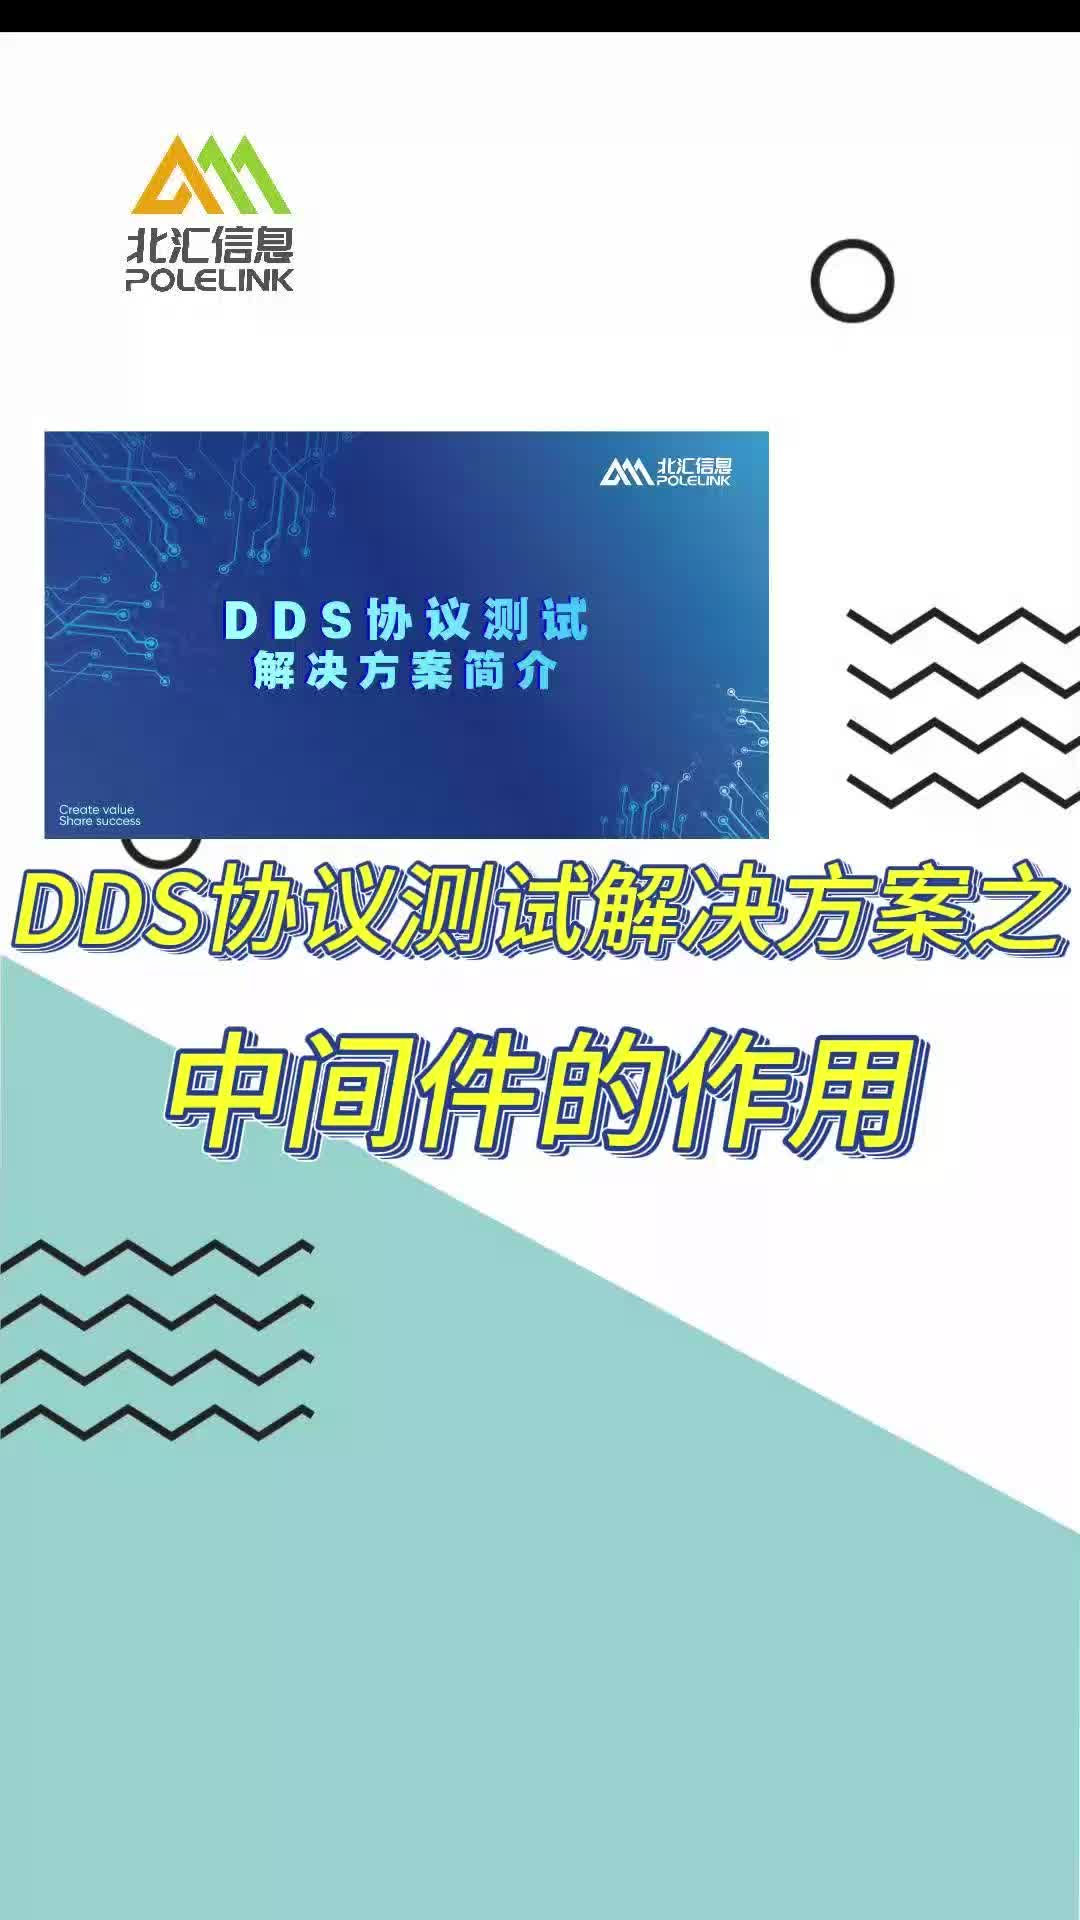 DDS协议测试解决方案之中间件的作用#DDS 